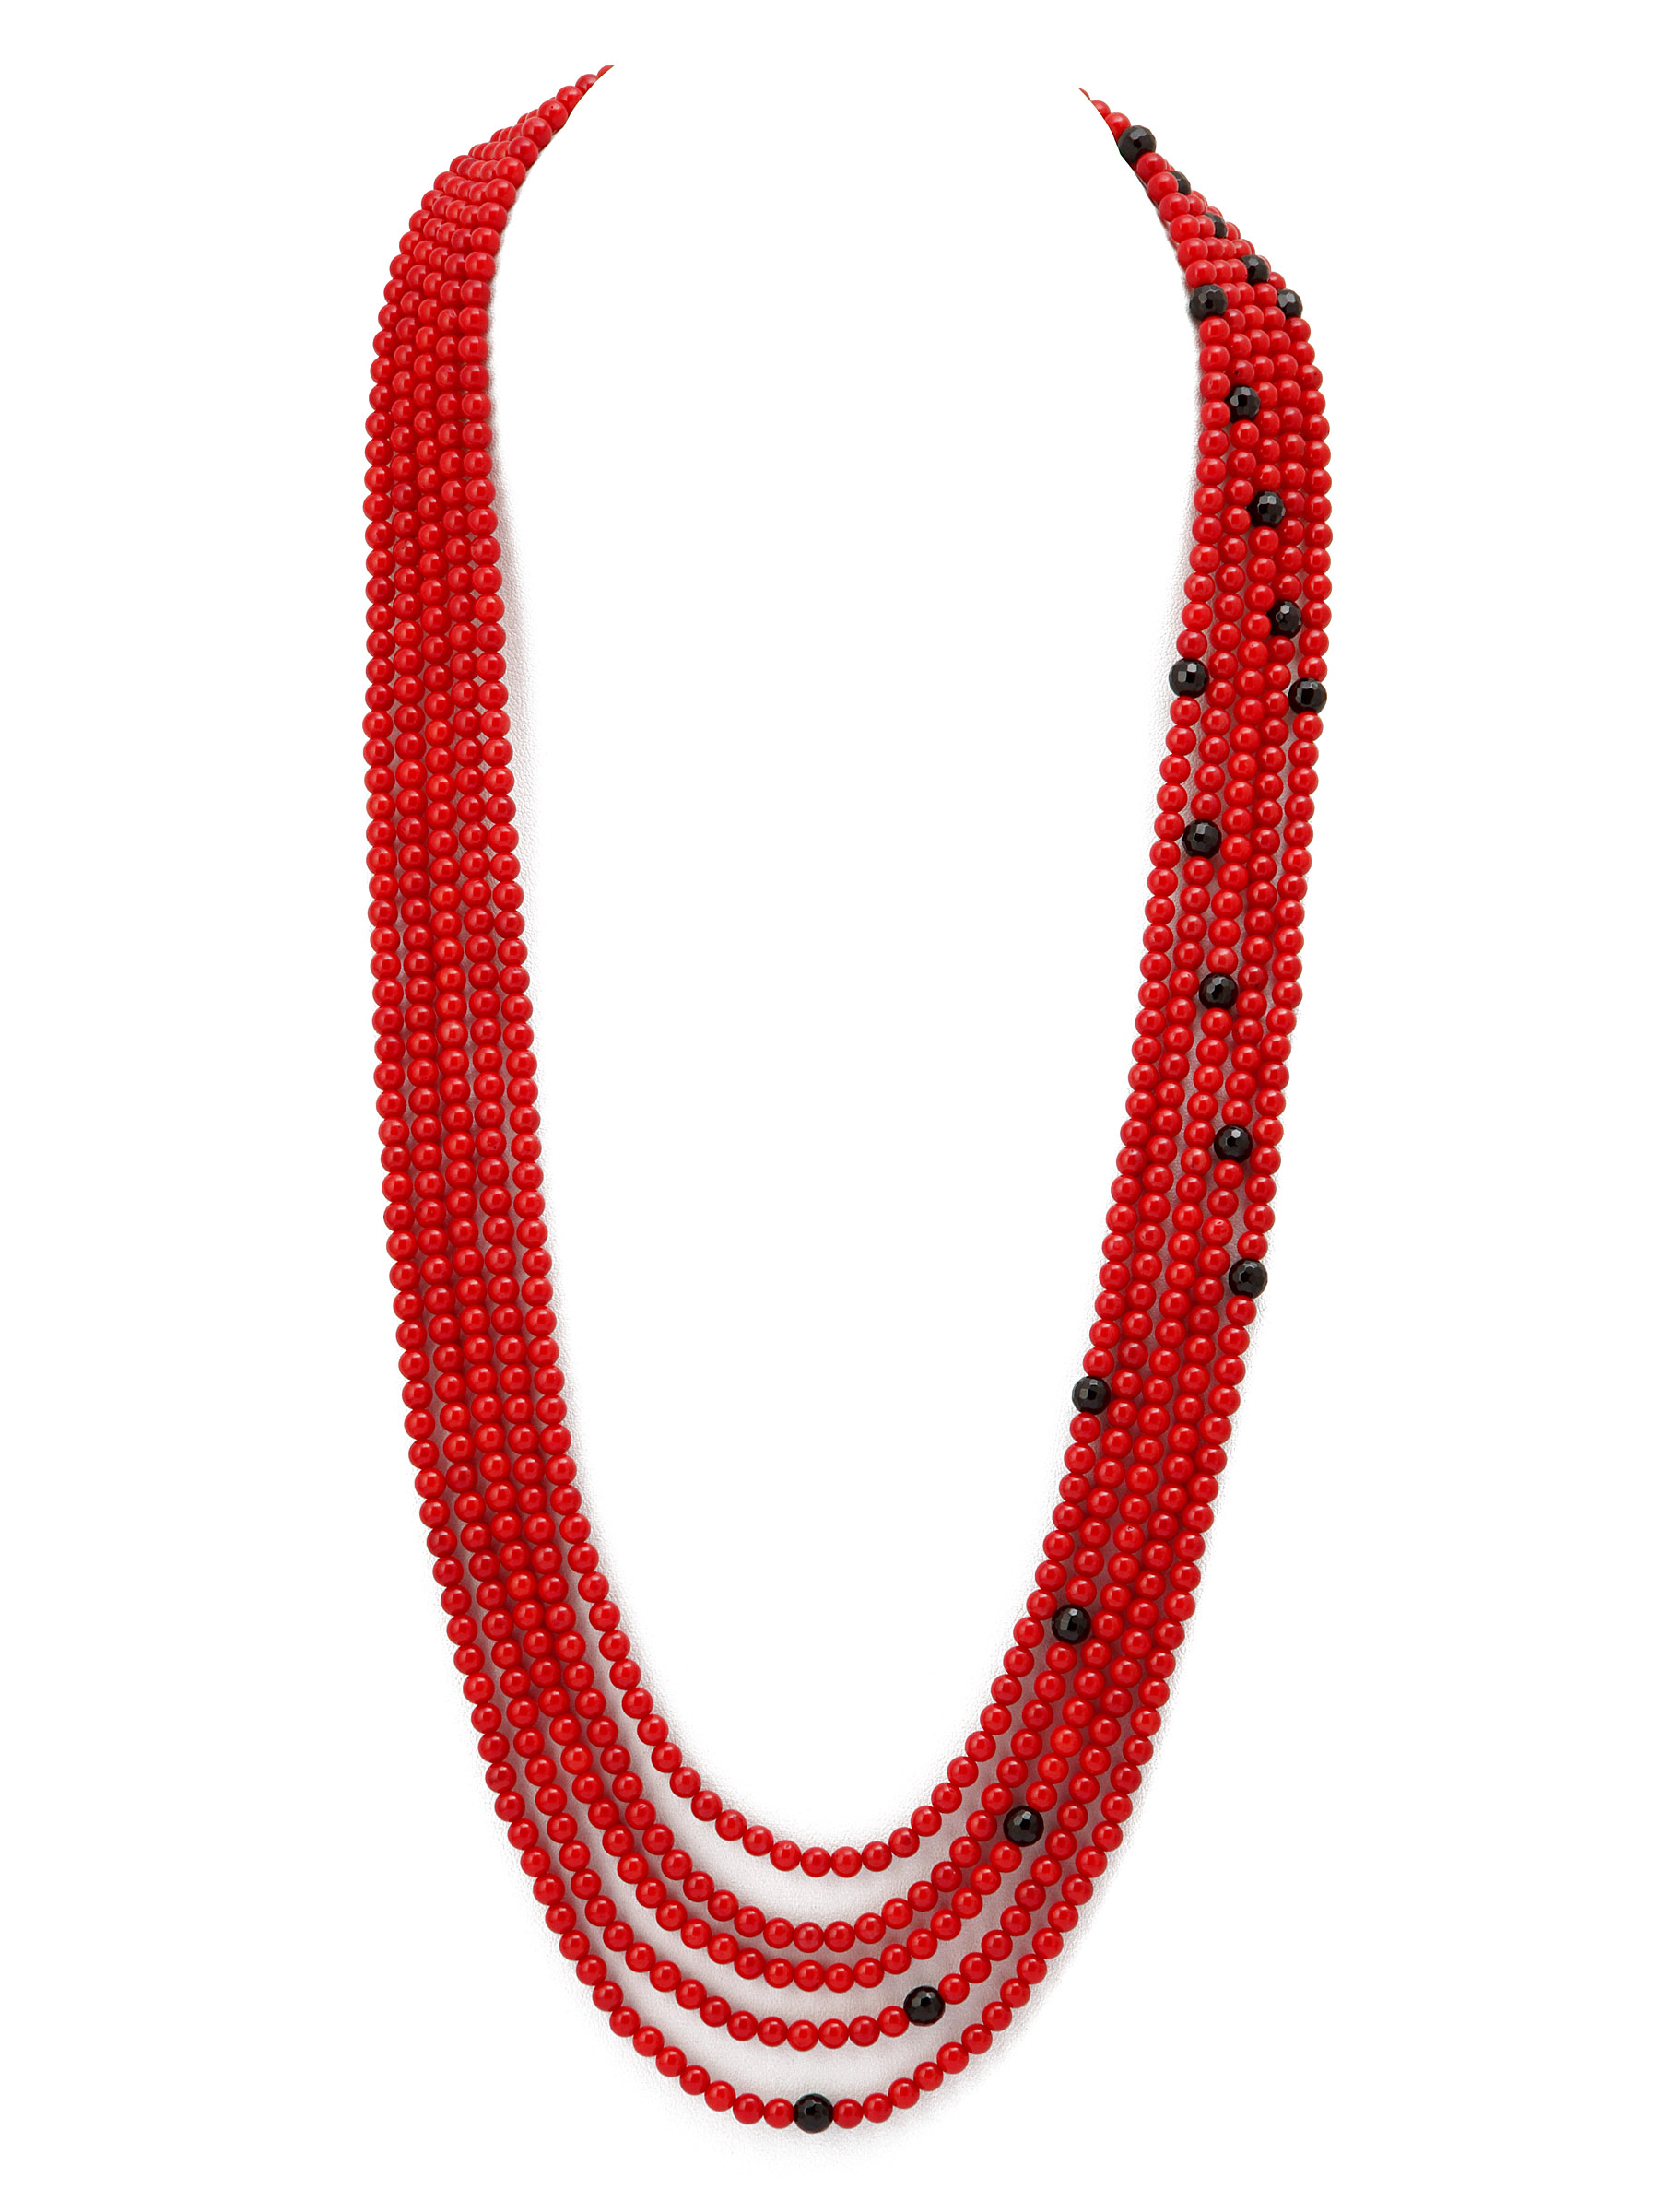 фото Колье/ожерелье бижутерное ЖемАрт с541-054, Агат, Коралл, 72 см, красный, черный, золотой